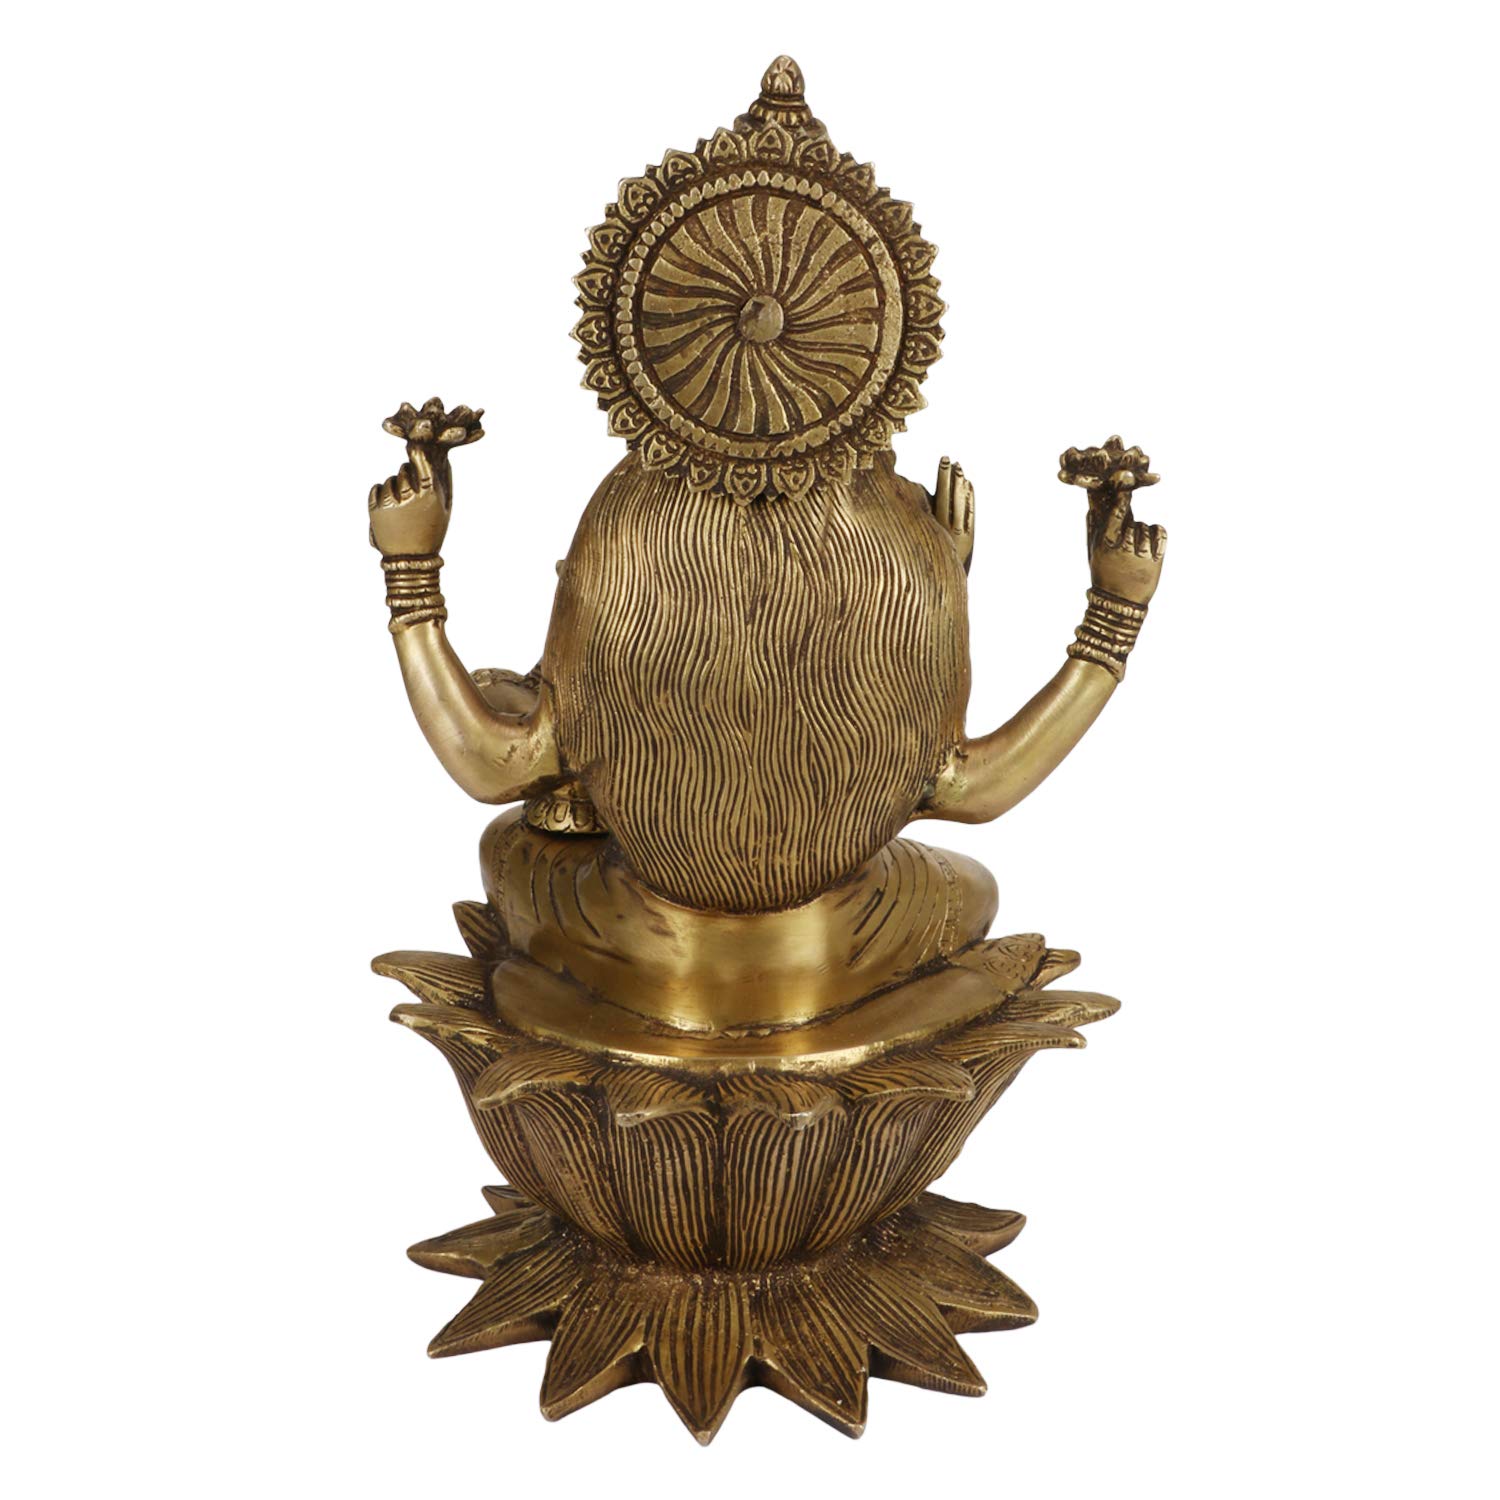 Lakshmi Narayana Sculpture